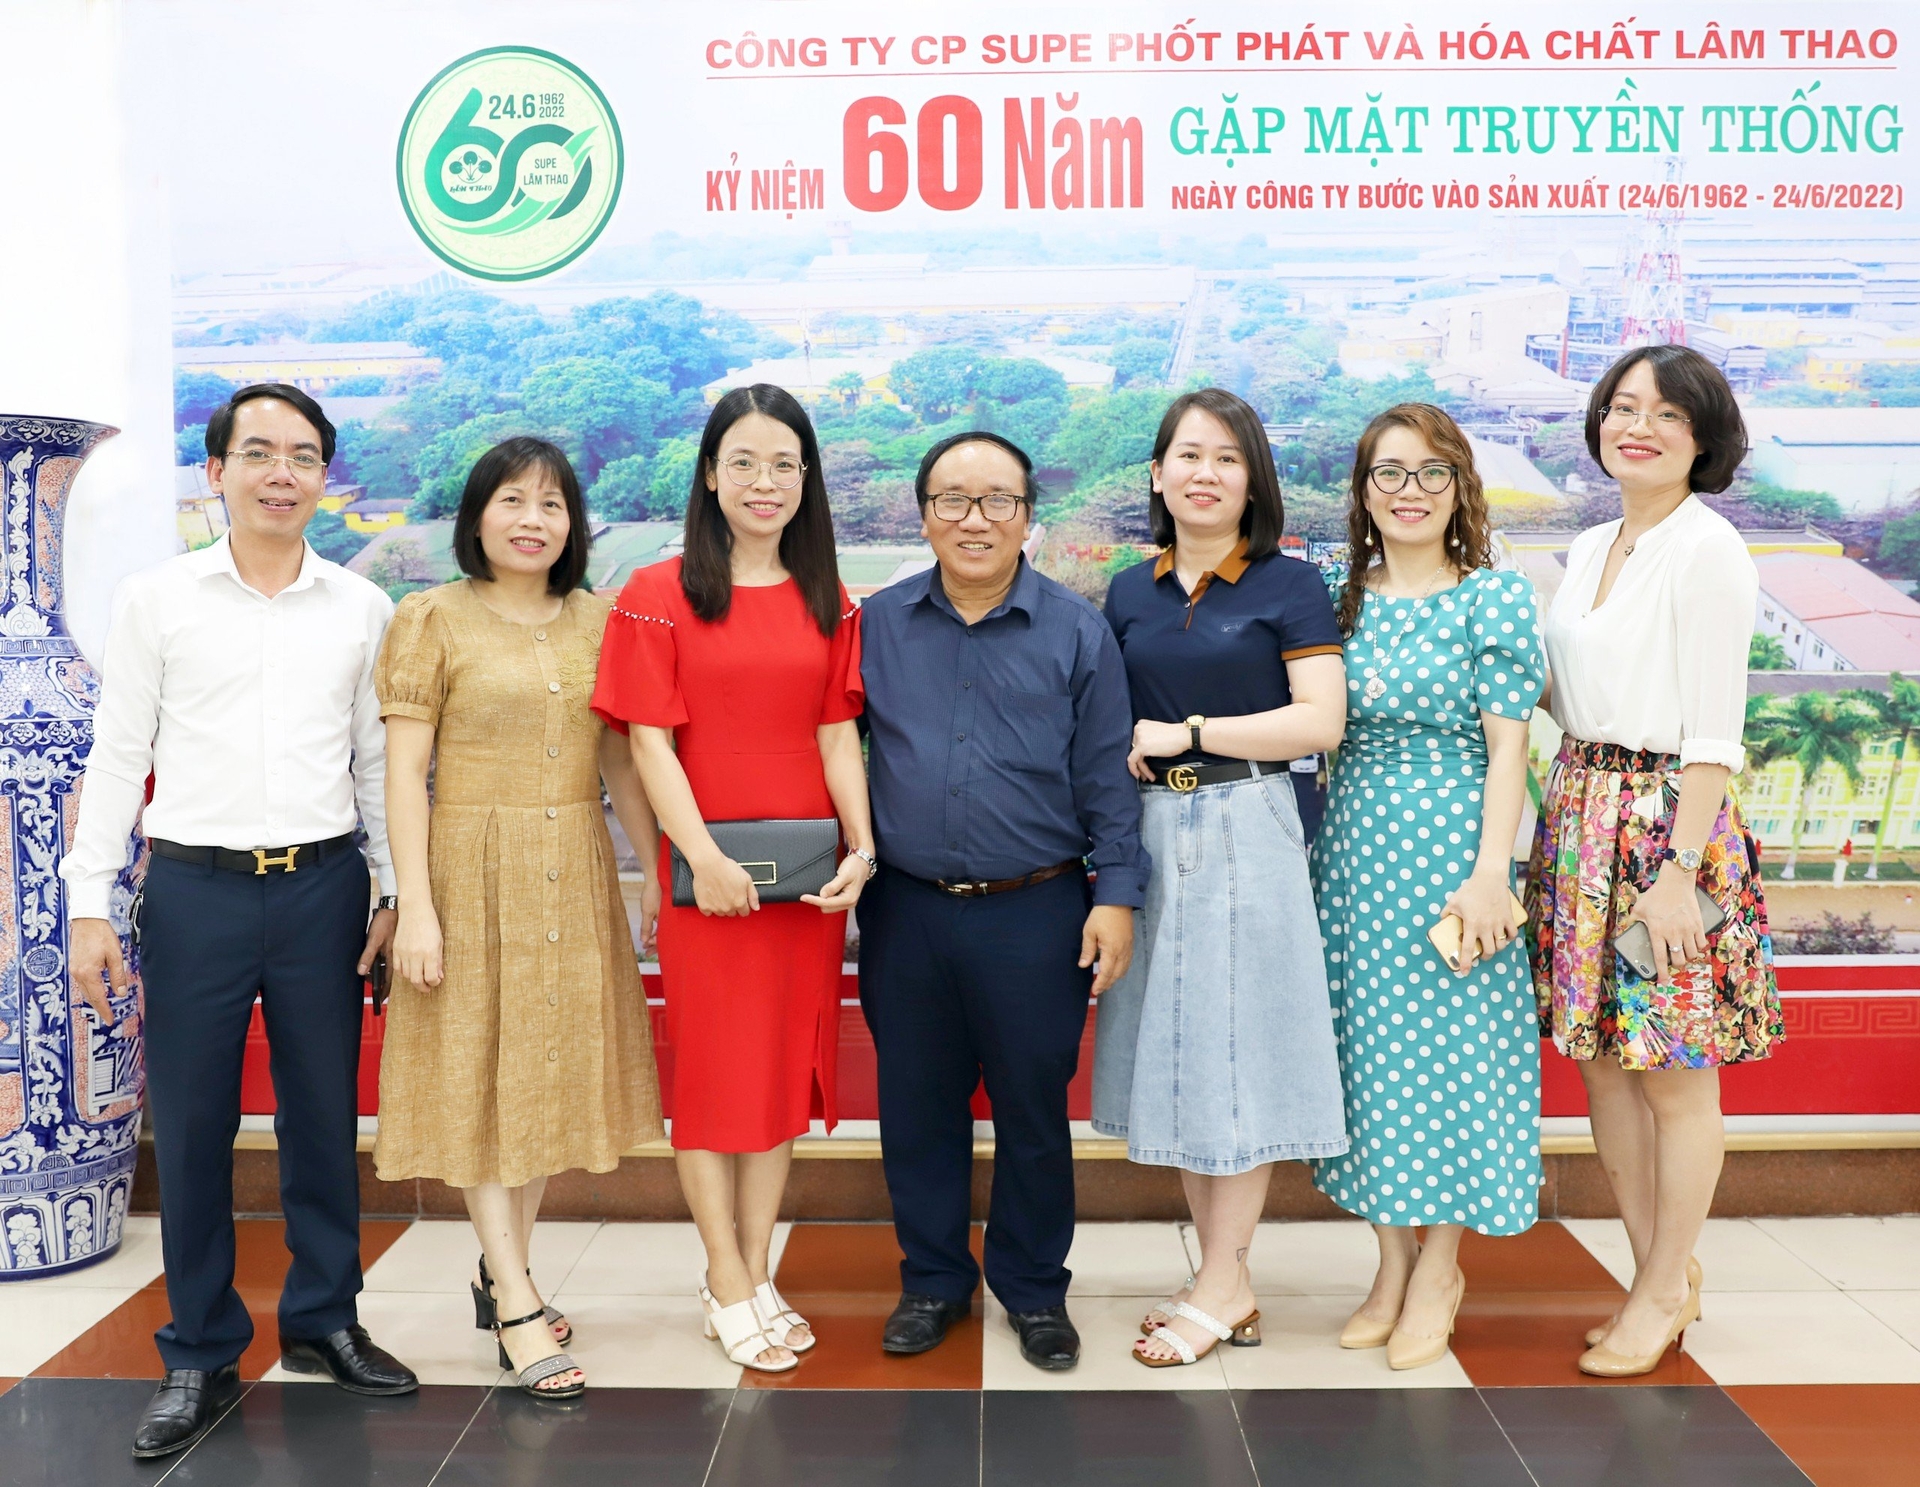 Nhà thơ Trần Đăng Khoa chụp ảnh cùng cán bộ công ty và các nhà báo. Ảnh: Lâm Thao.